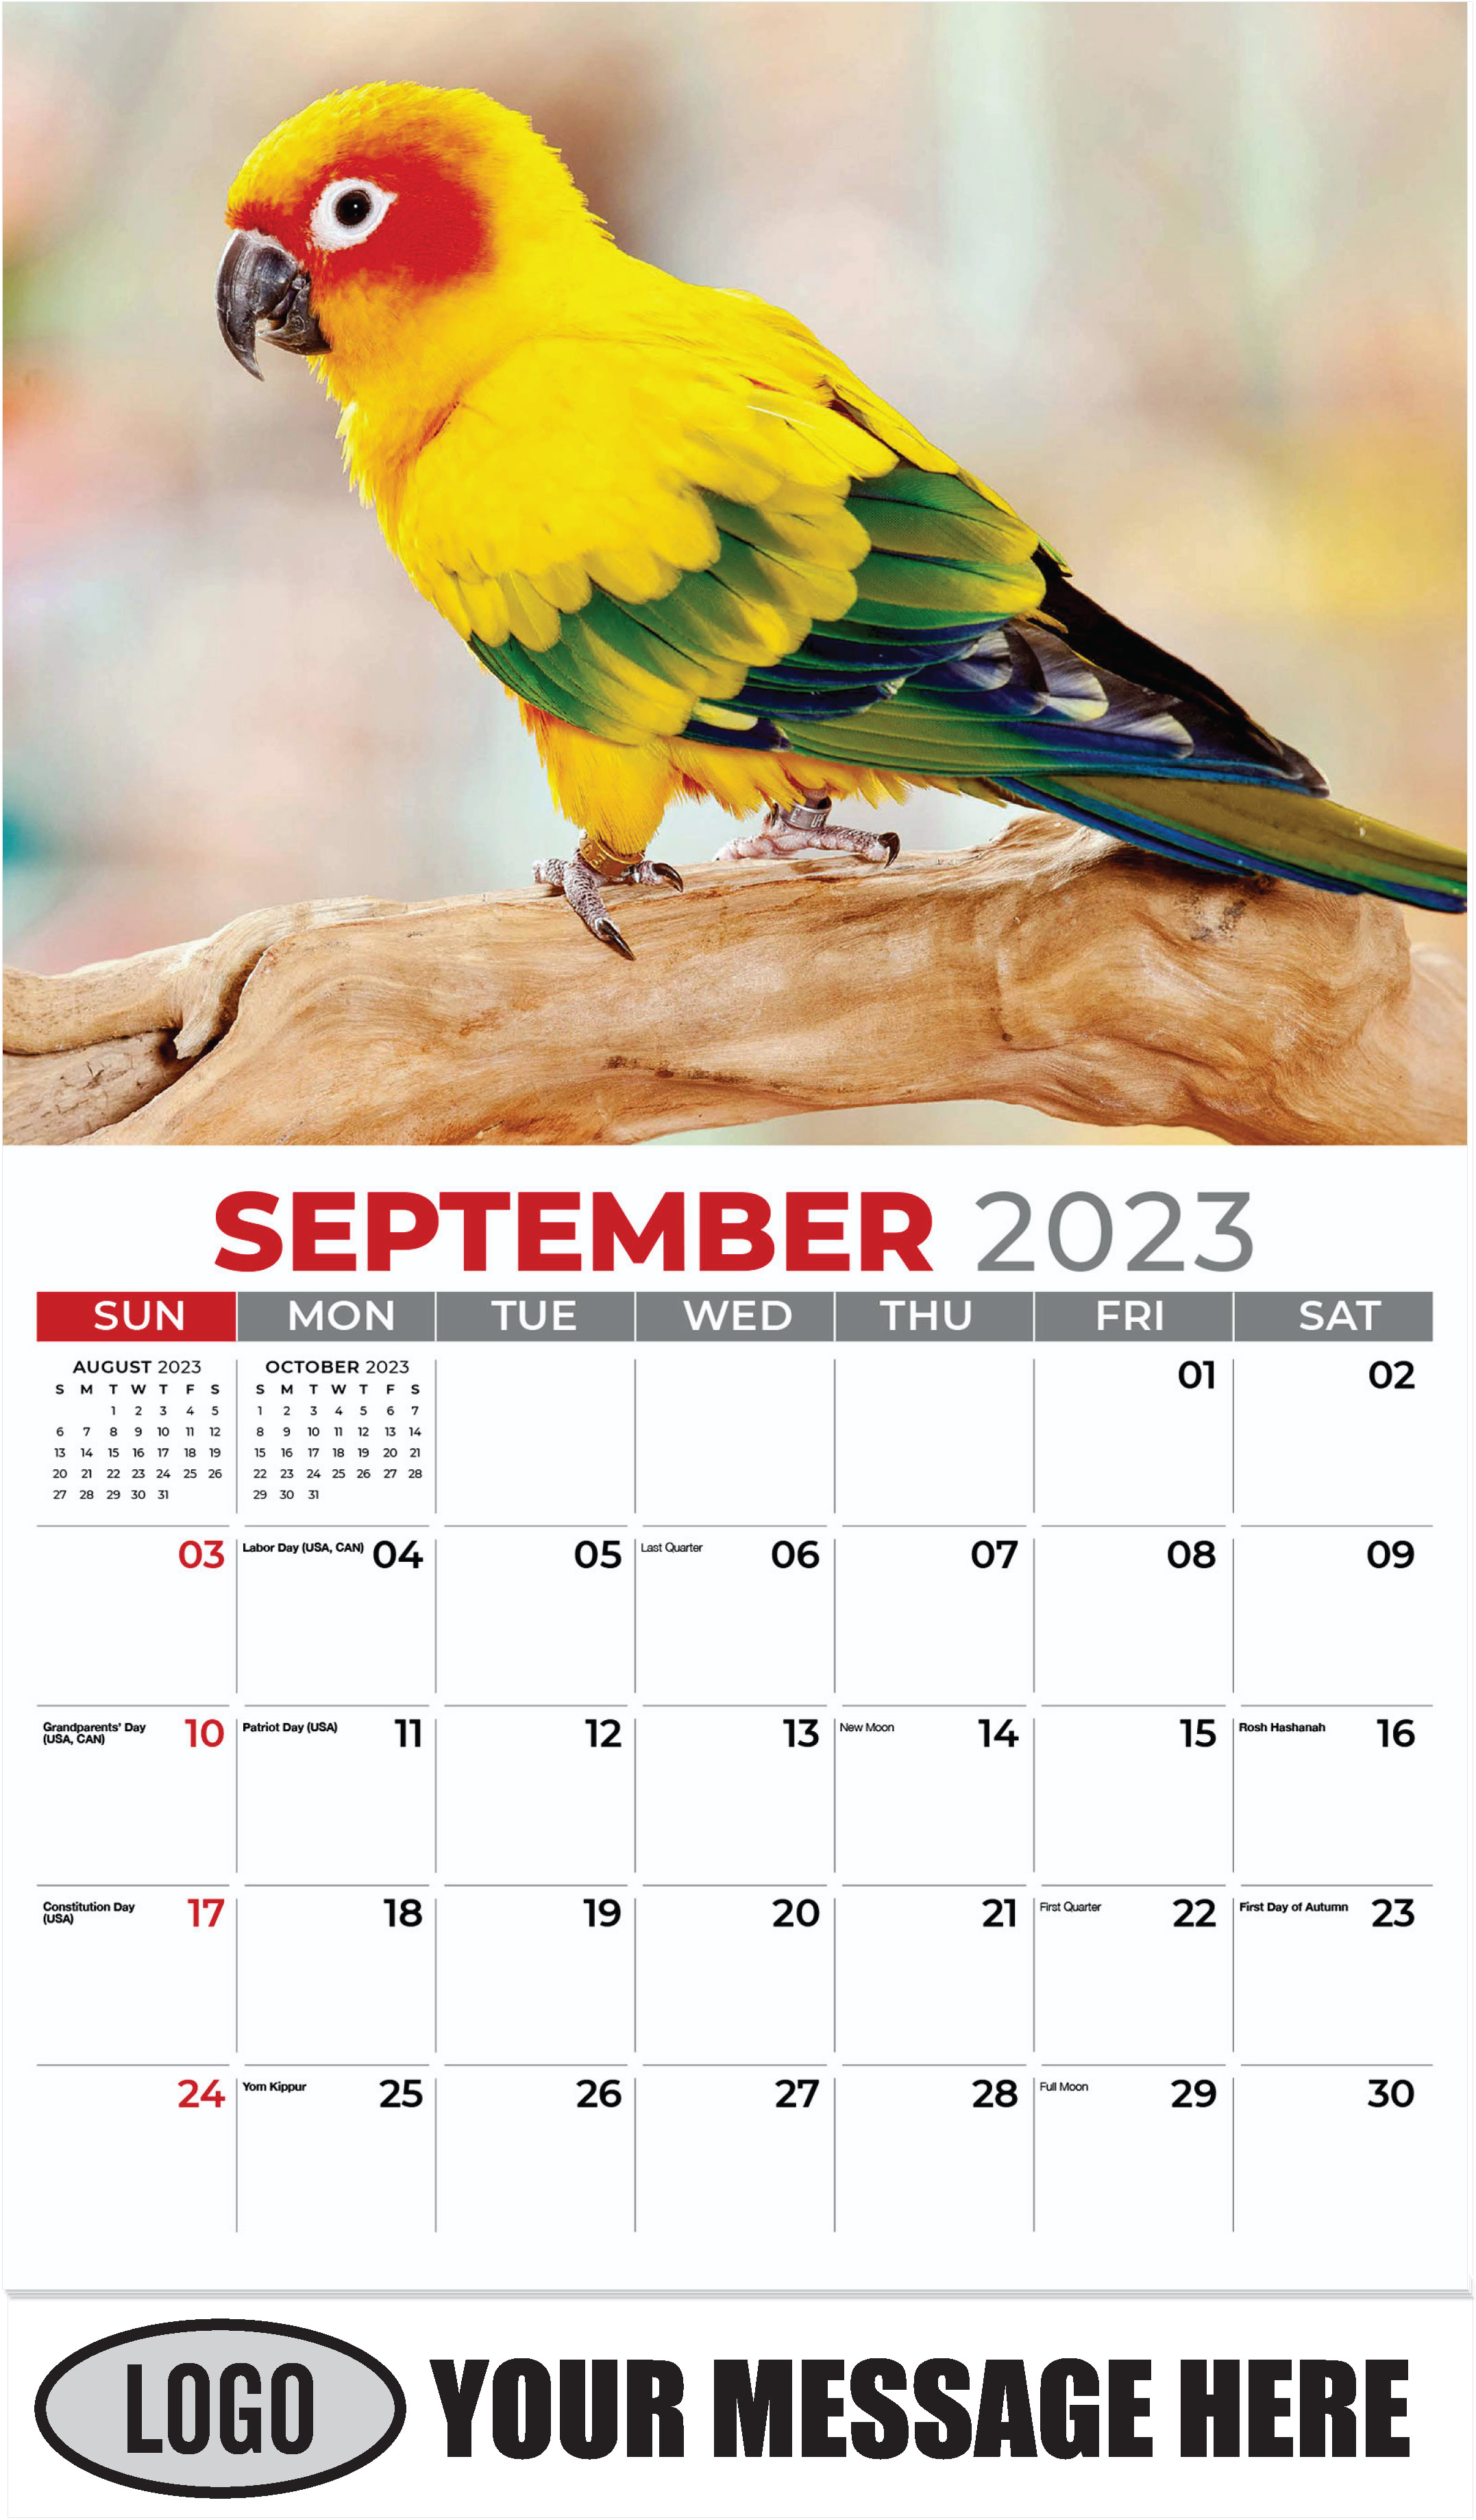 Sun Conure - September - Pets 2023 Promotional Calendar